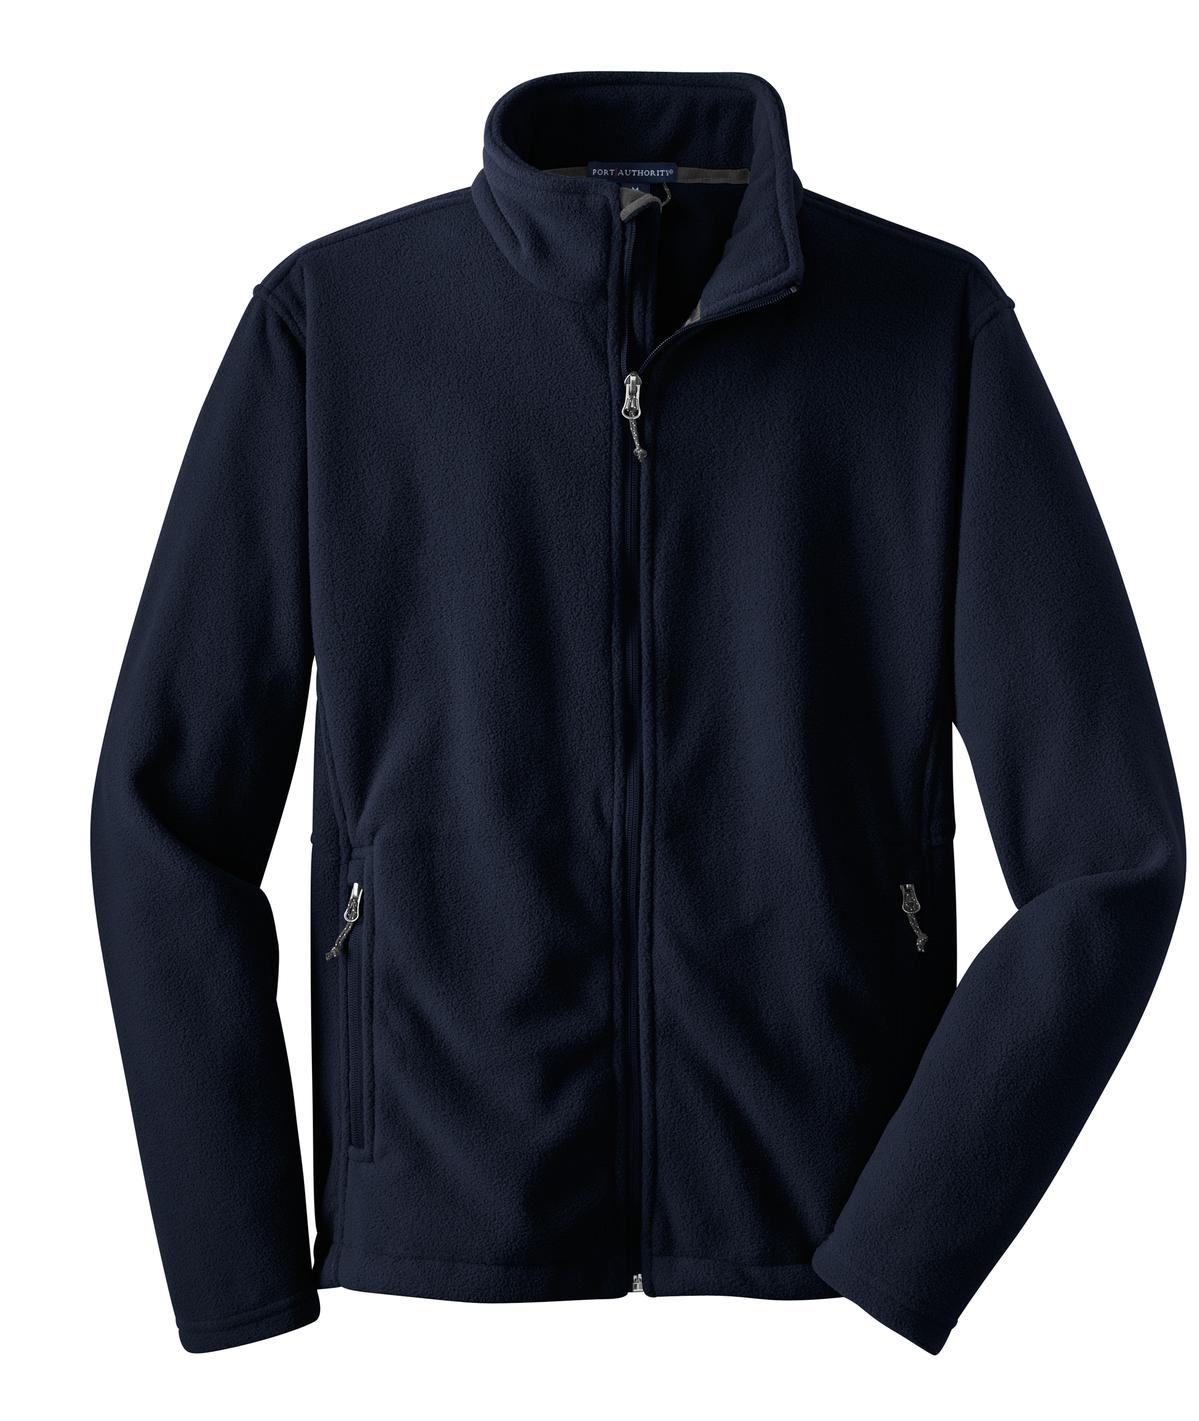 [LFS] Fleece Jacket Full Zip